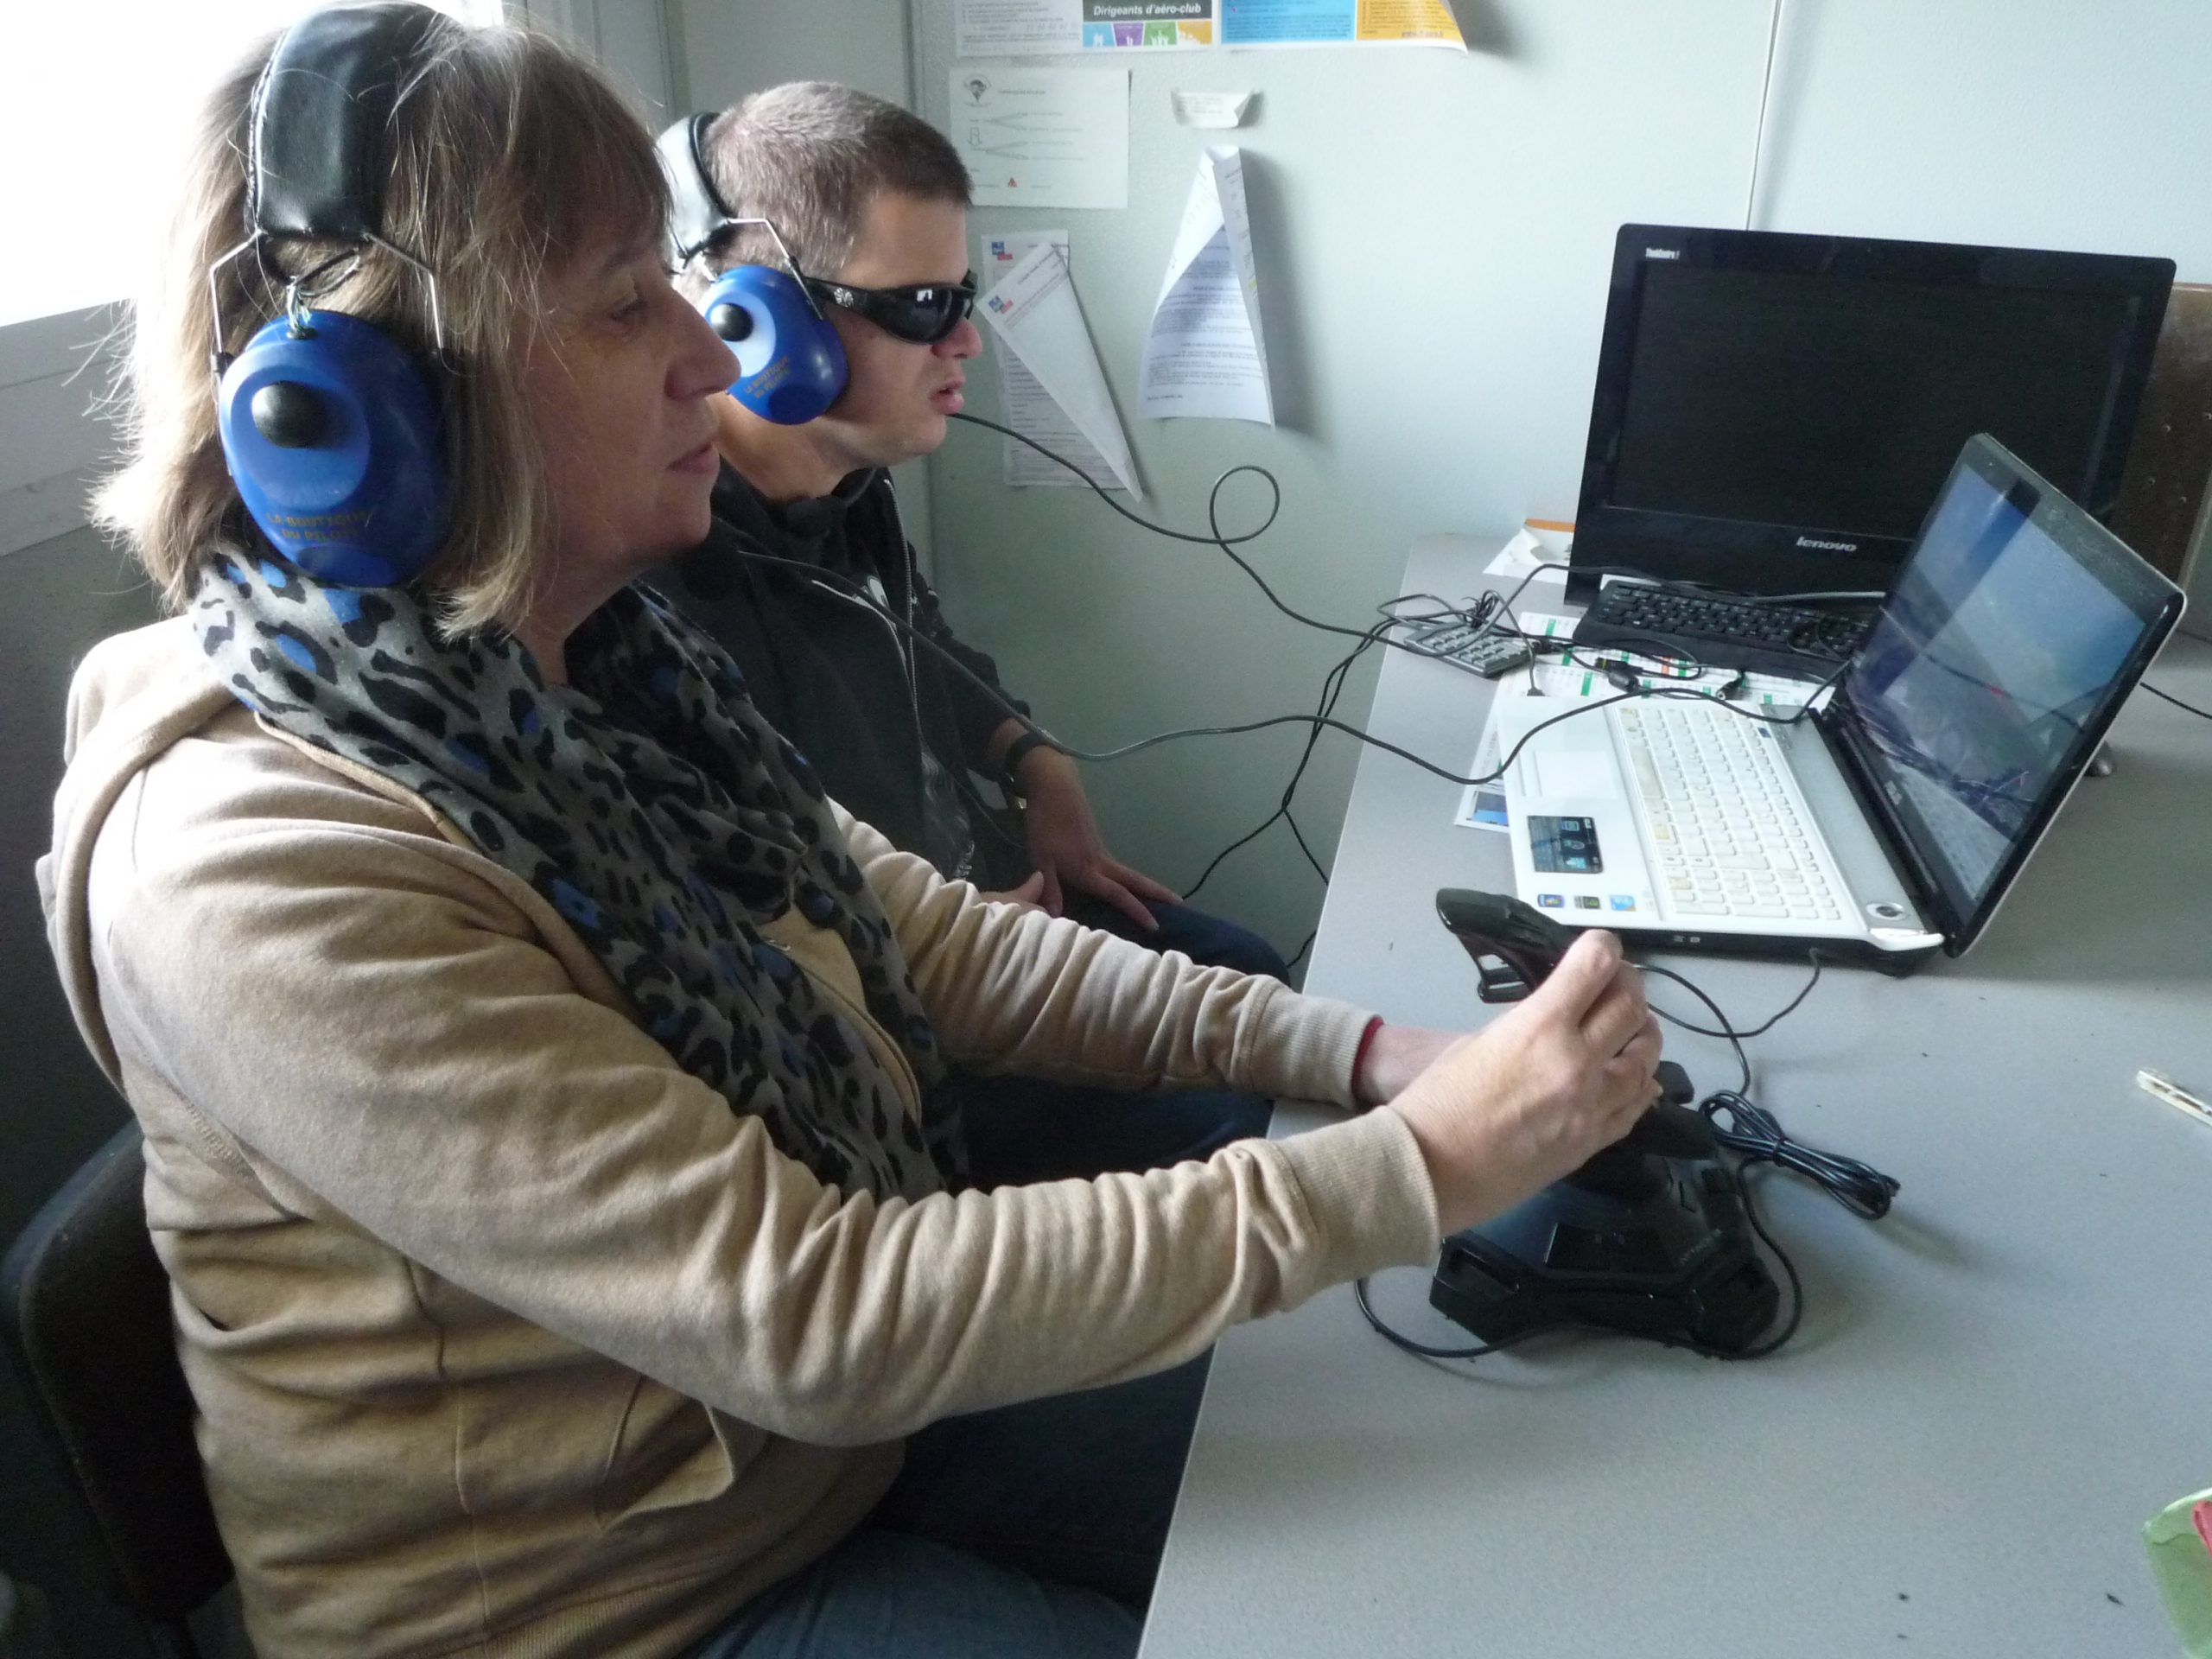 Dans une salle, Christine et Kevin utilisent le simulateur de vol. Chacun porte un casque audio relié aux écrans ; Christine manipule le joystick pour les commandes.